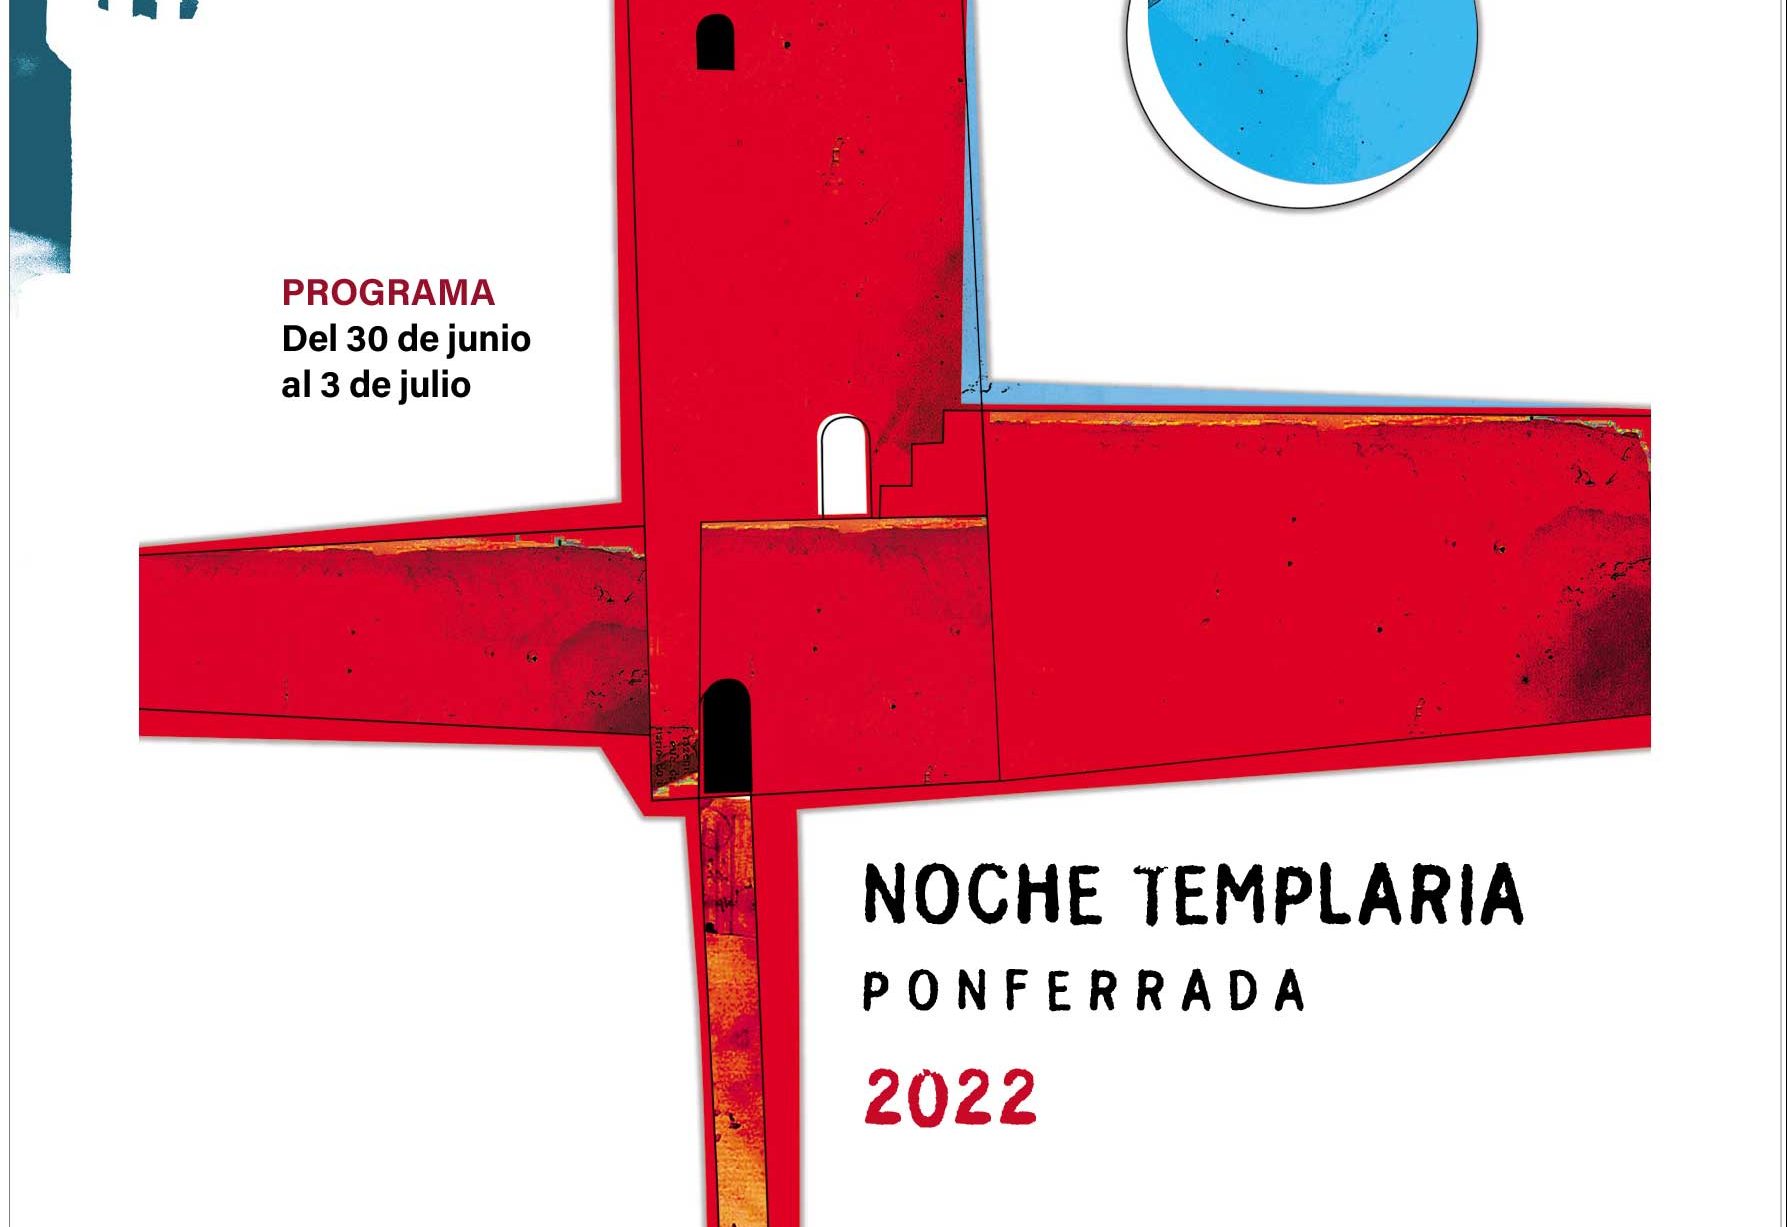 Noche templaria 2022 en Ponferrada. Programa de actividades del 30 de junio al 3 de julio 1